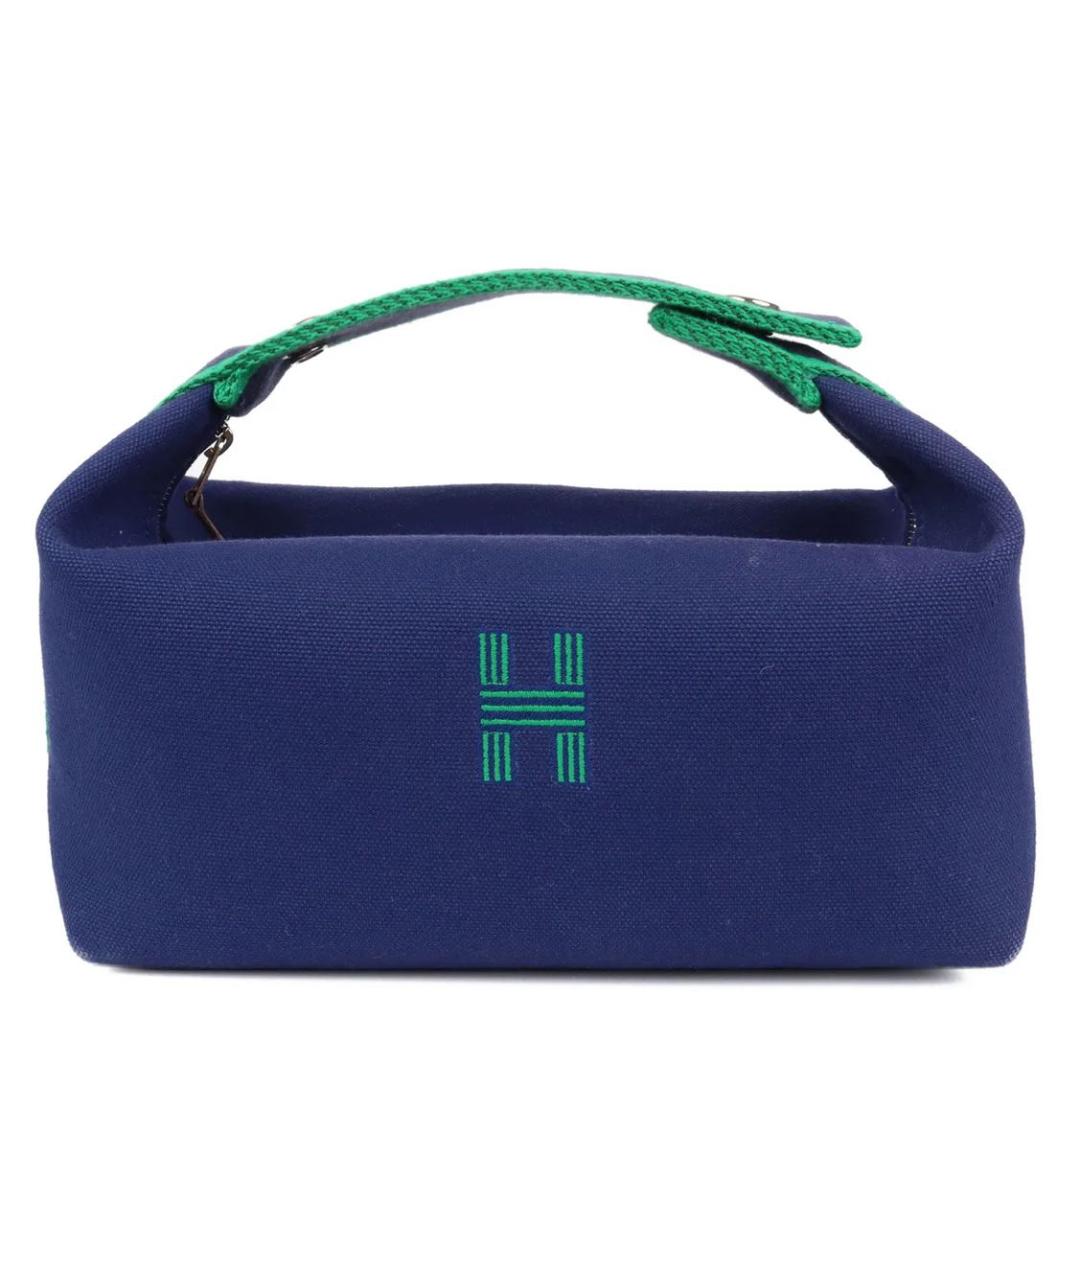 HERMES PRE-OWNED Темно-синяя хлопковая сумка с короткими ручками, фото 1